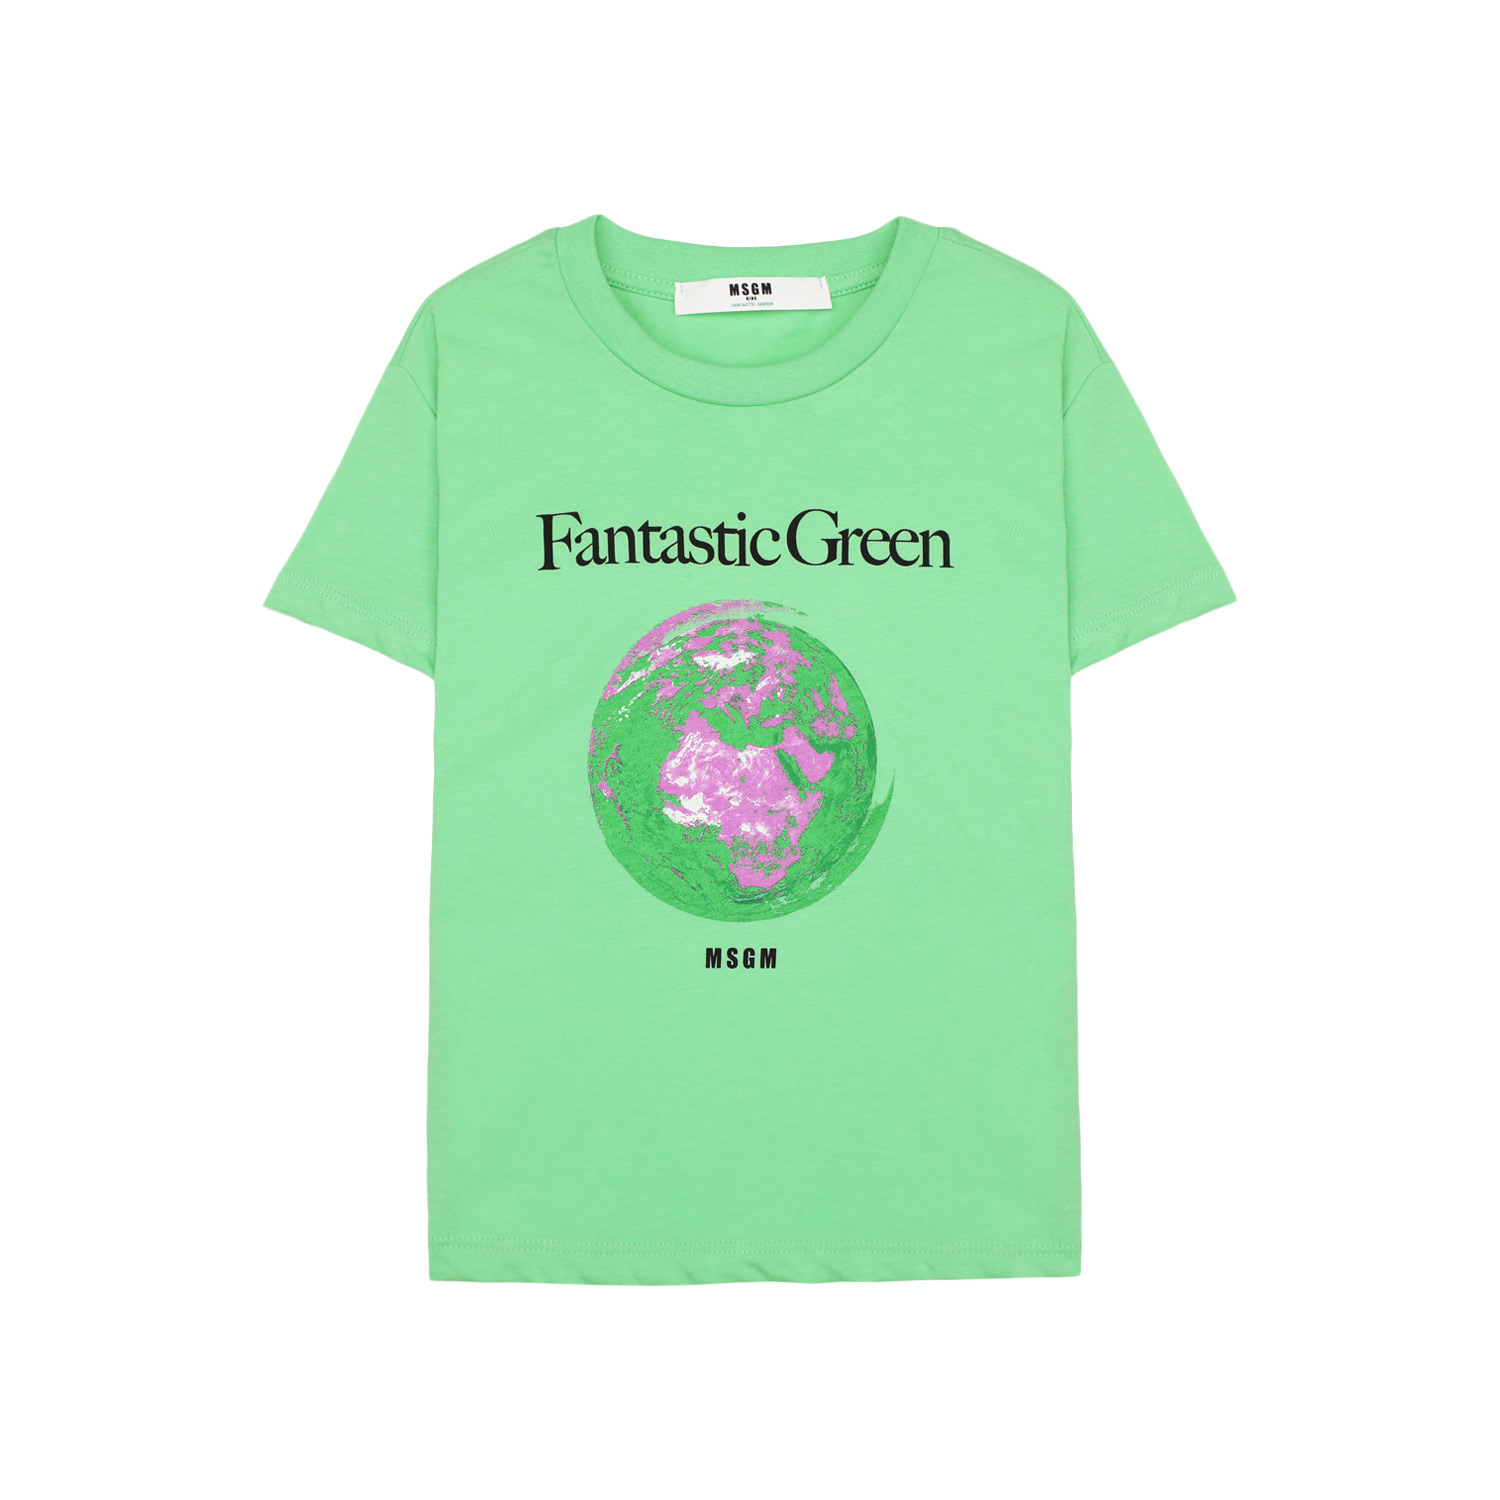 MSGM fantastic green t-shirt Sydney AU